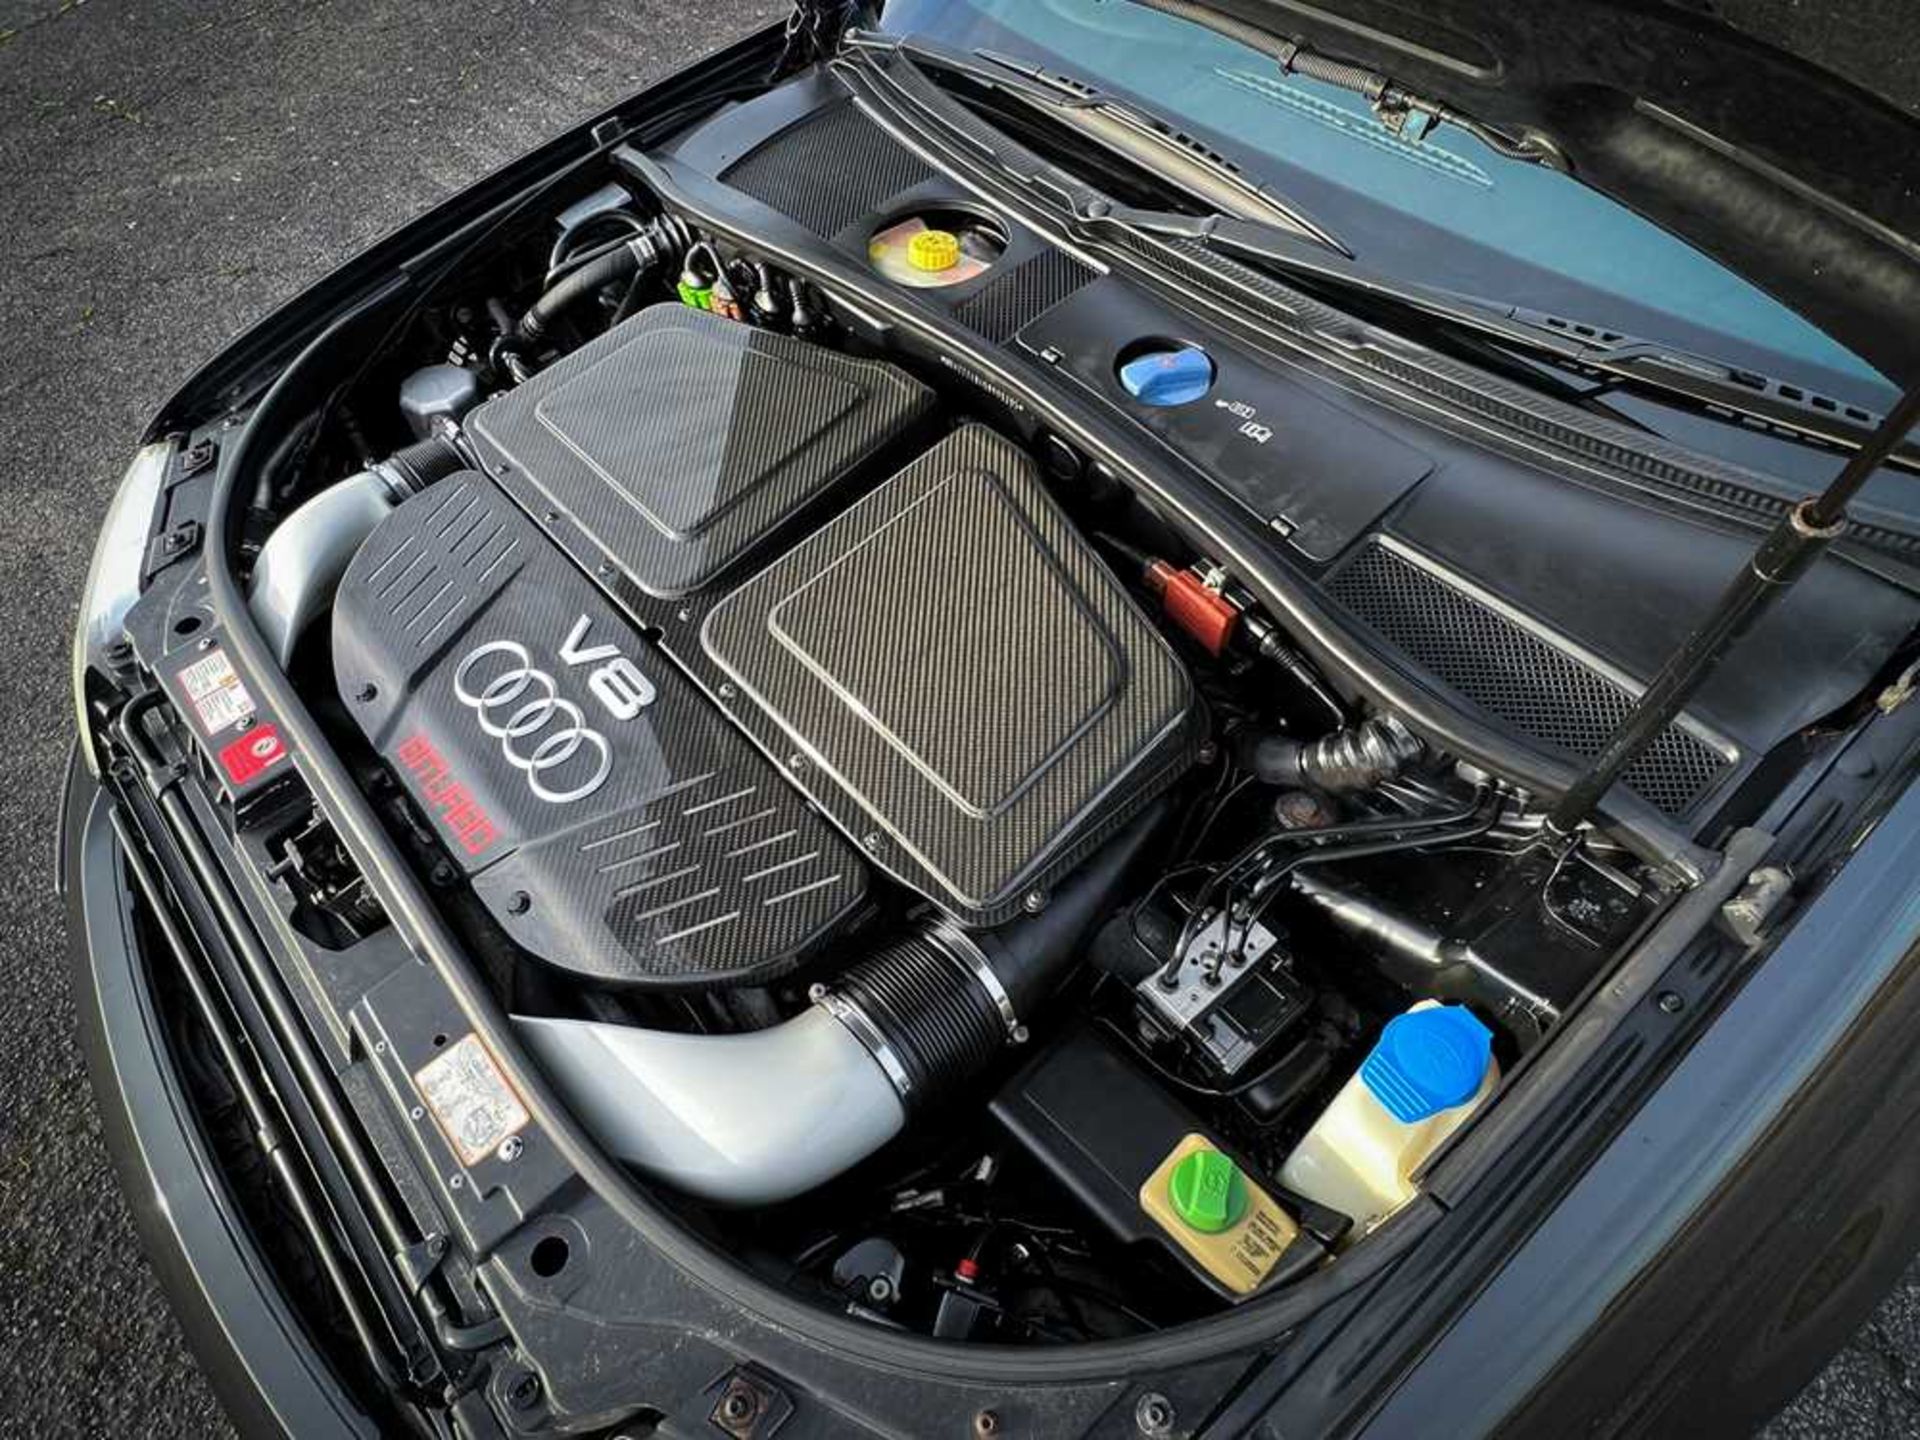 2004 Audi RS6 Quattro Plus No. 295 of just 999 European RS6 'Plus' models - Image 52 of 62